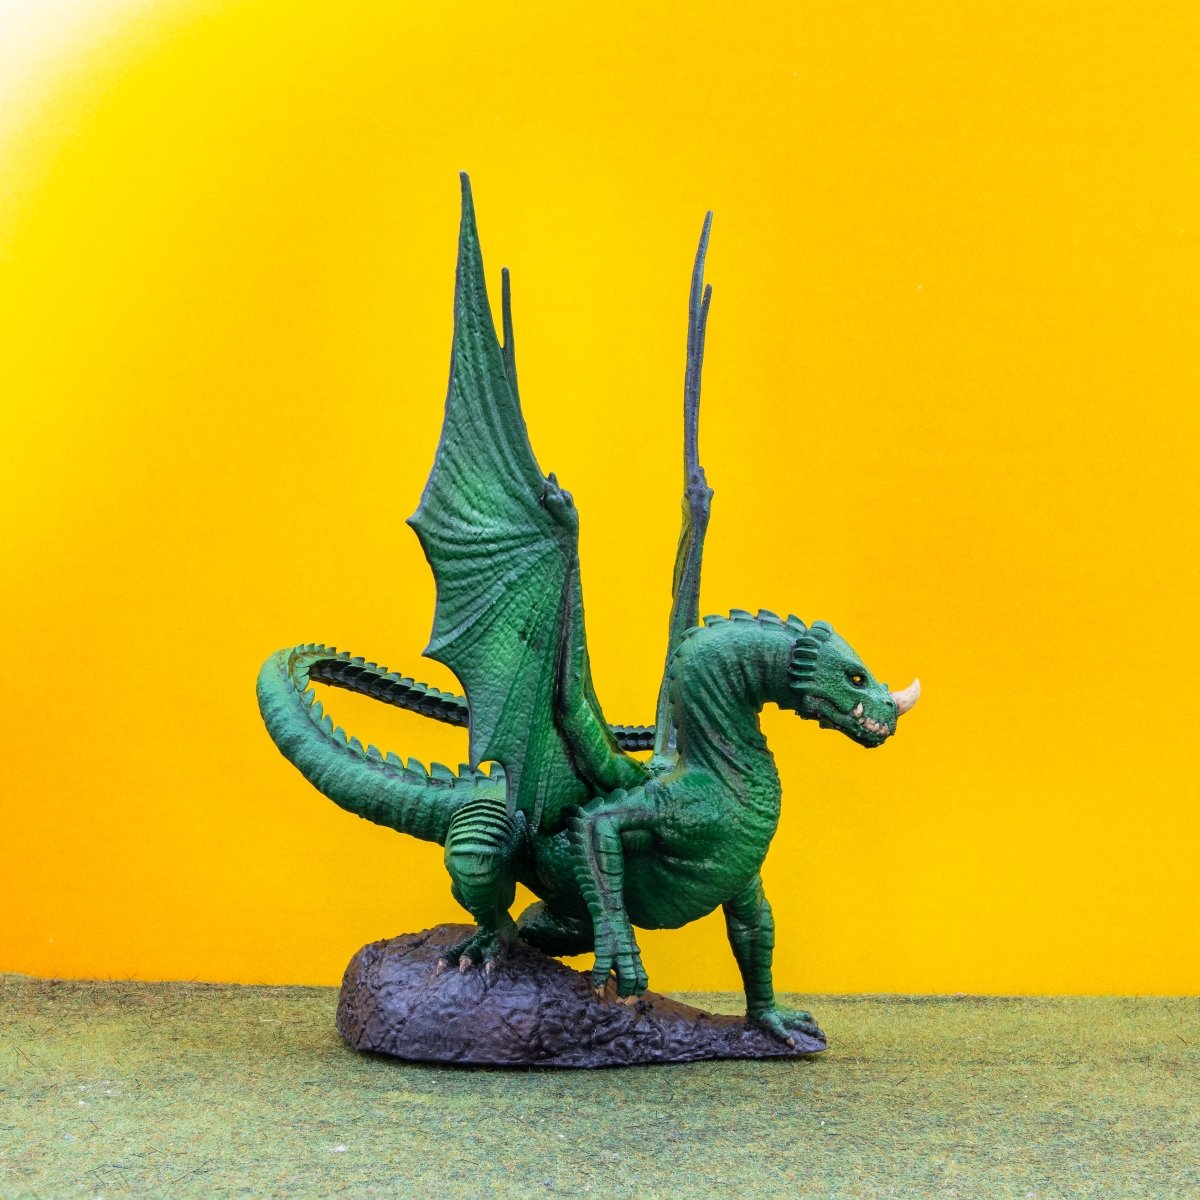 https://weprintminiatures.com/cdn/shop/products/young-green-dragon-miniature-rn-estudio-239653.jpg?v=1703449312